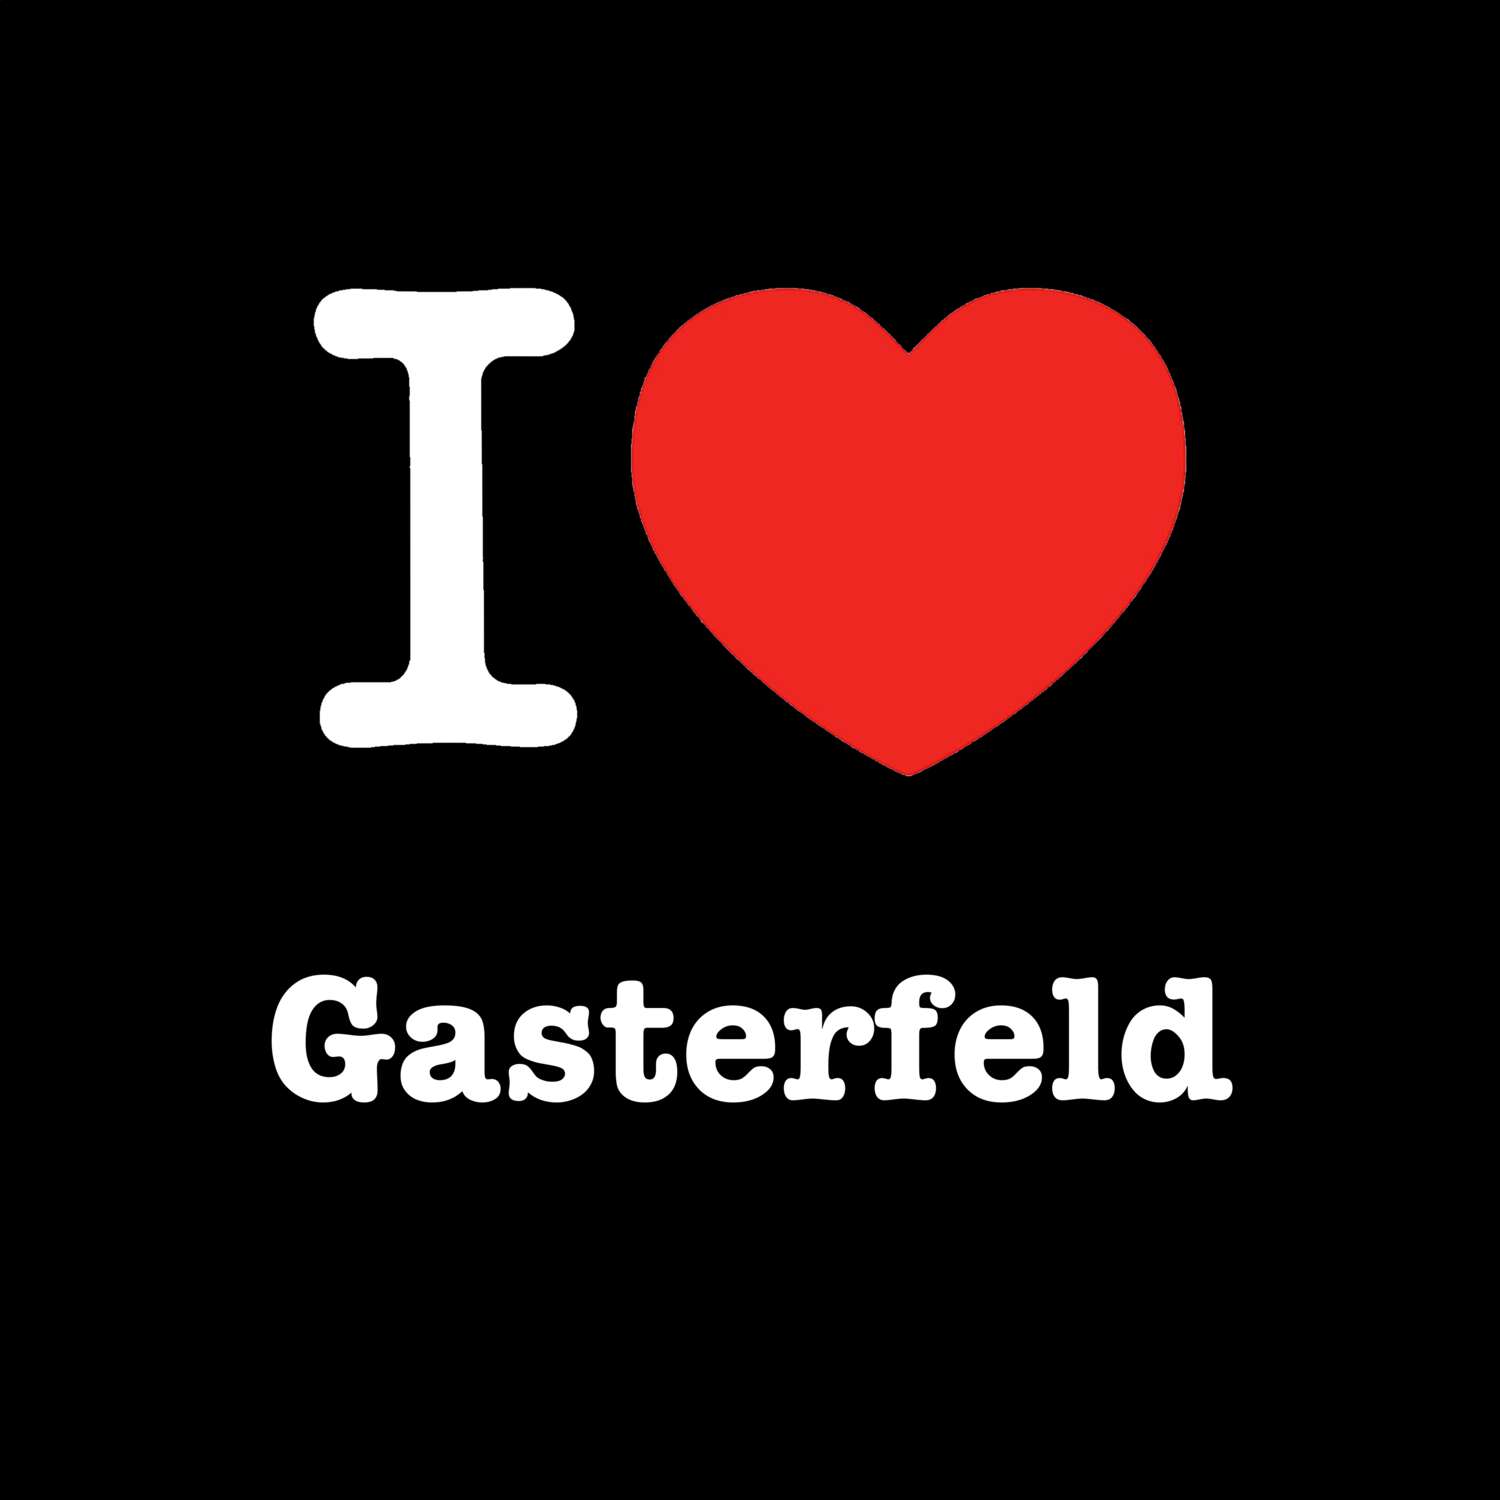 Gasterfeld T-Shirt »I love«